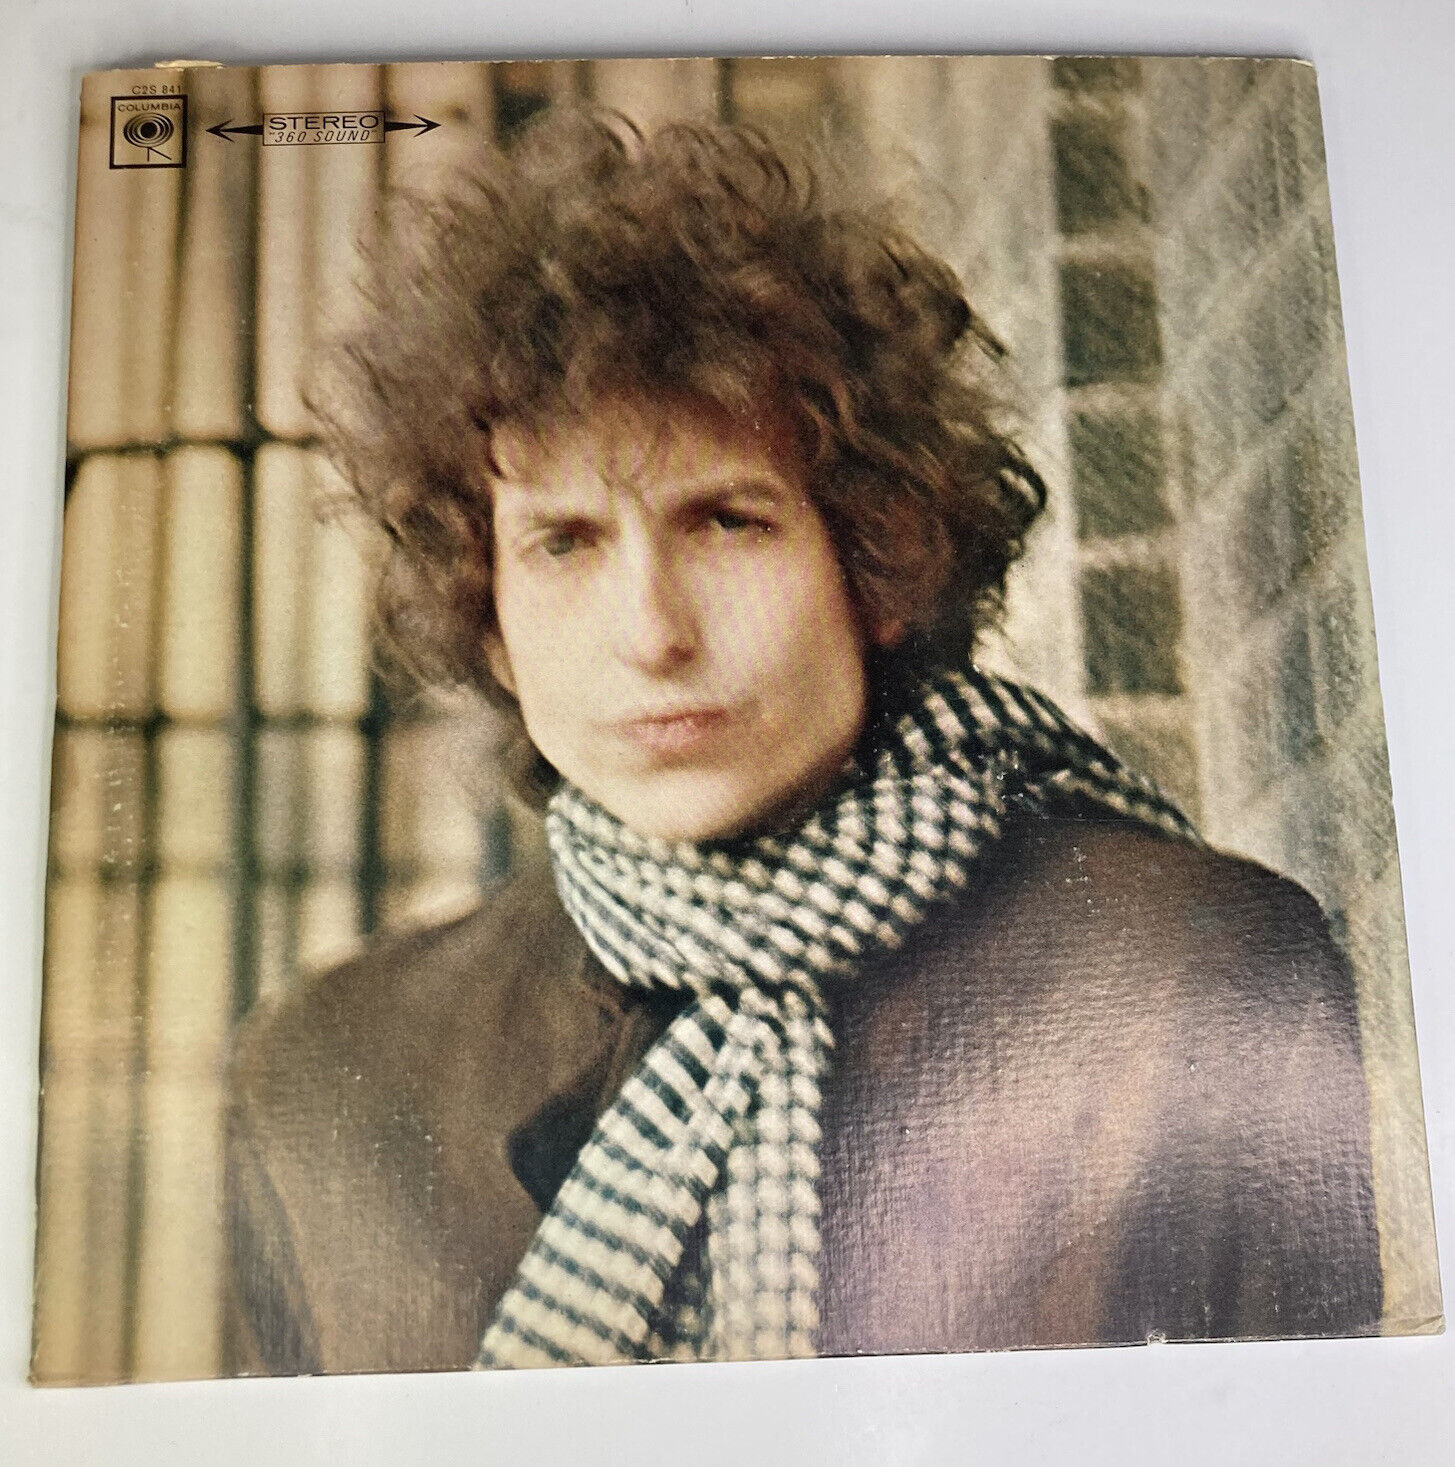 Vintage 1972 Bob Dylan “Blonde On Blonde” 2-Eye 12” LP #C2S 841 Columbia Record